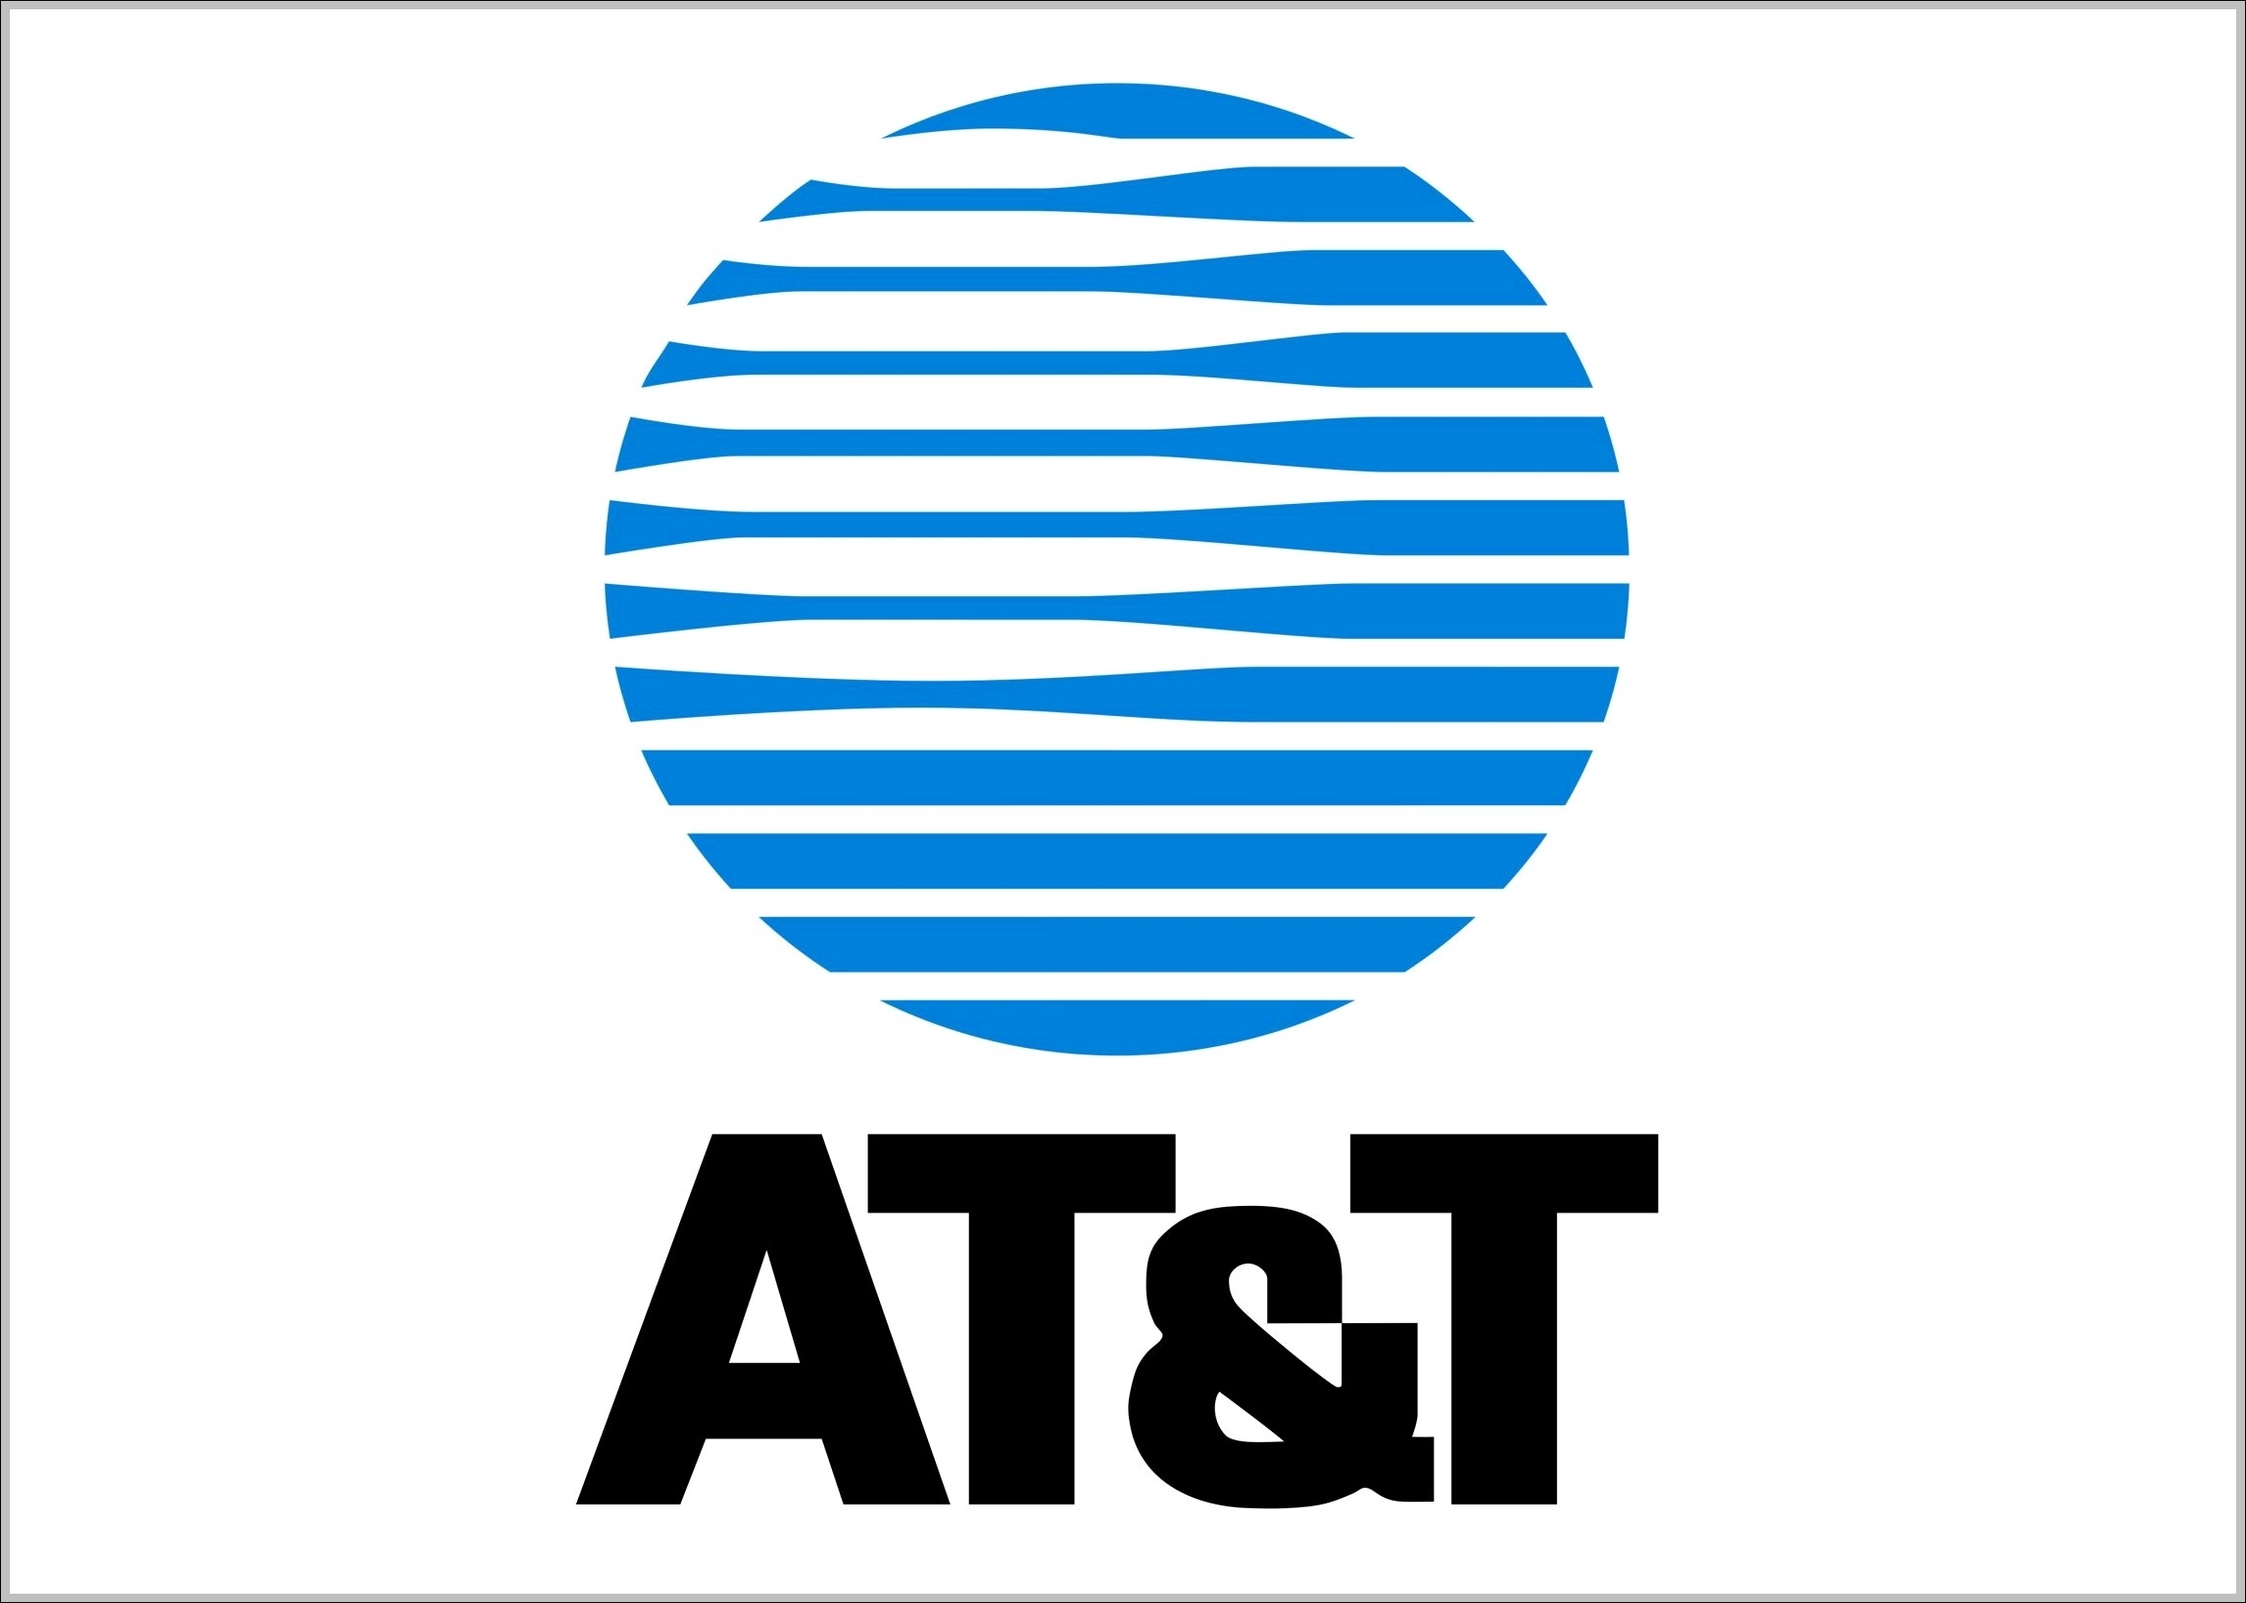 ATT logo 1984